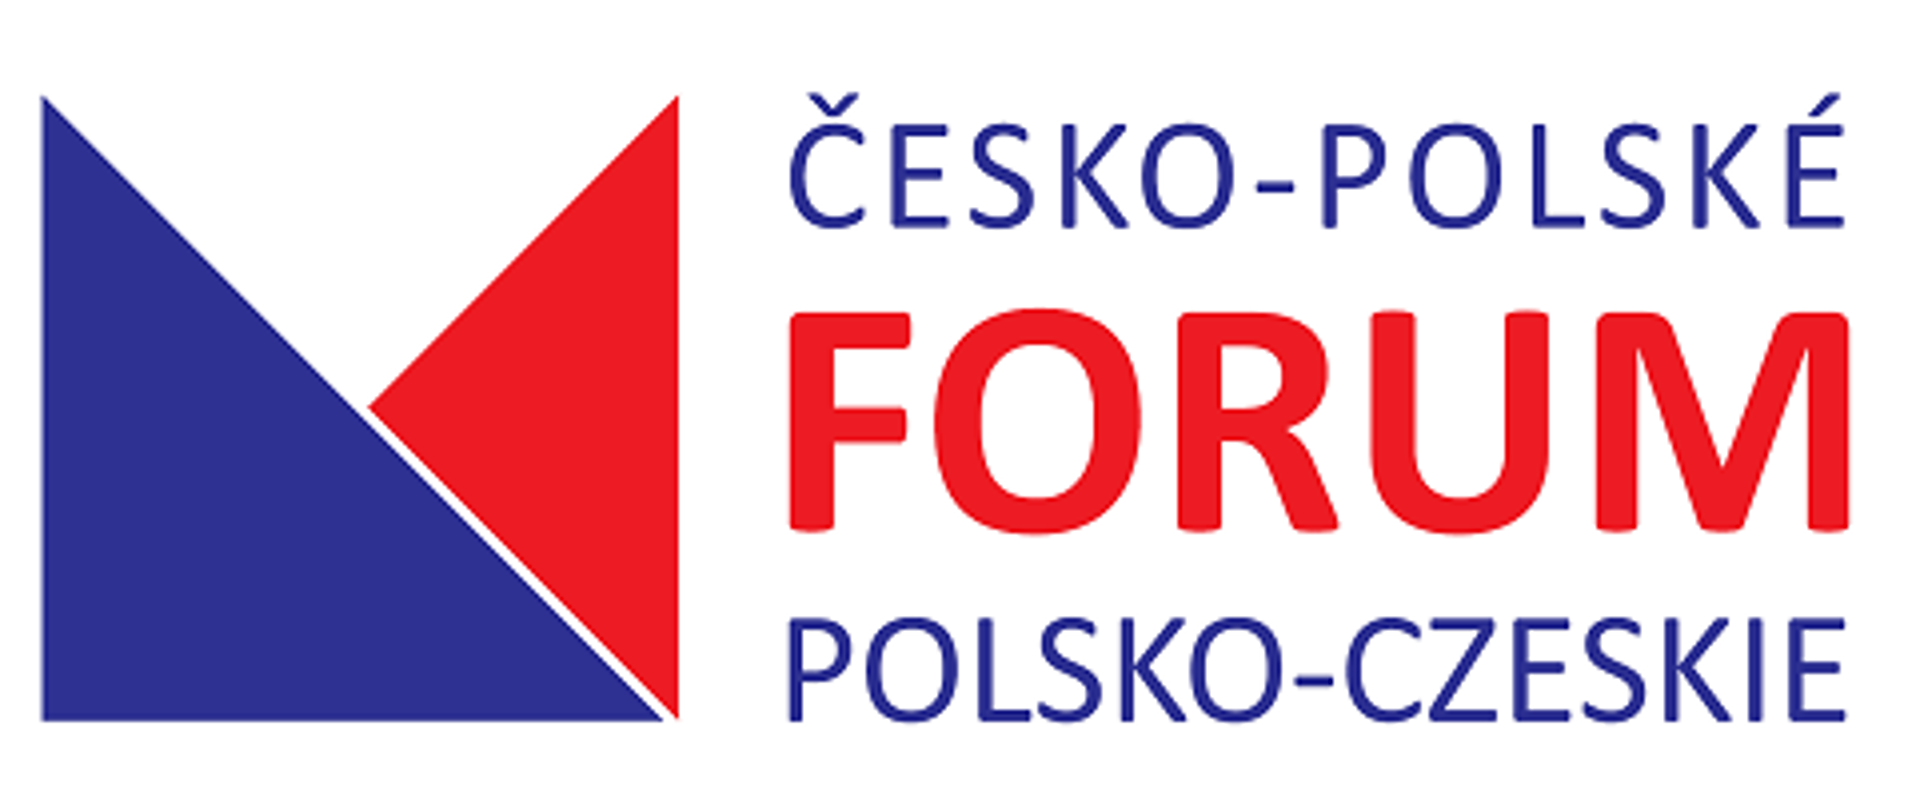 Polsko-české fórum